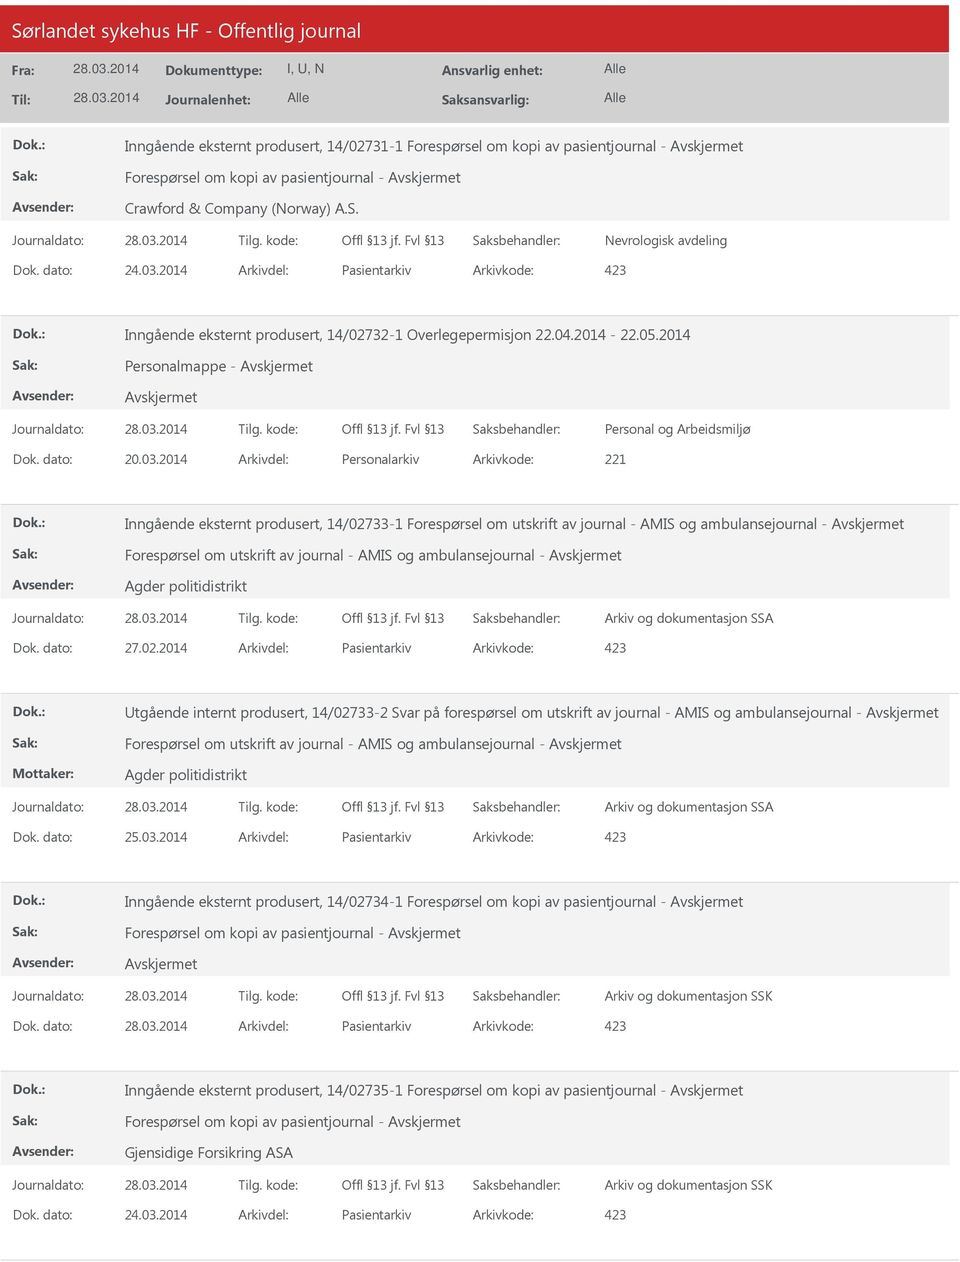 2014 Arkivdel: Personalarkiv Arkivkode: 221 Inngående eksternt produsert, 14/02733-1 Forespørsel om utskrift av journal - AMIS og ambulansejournal - Forespørsel om utskrift av journal - AMIS og